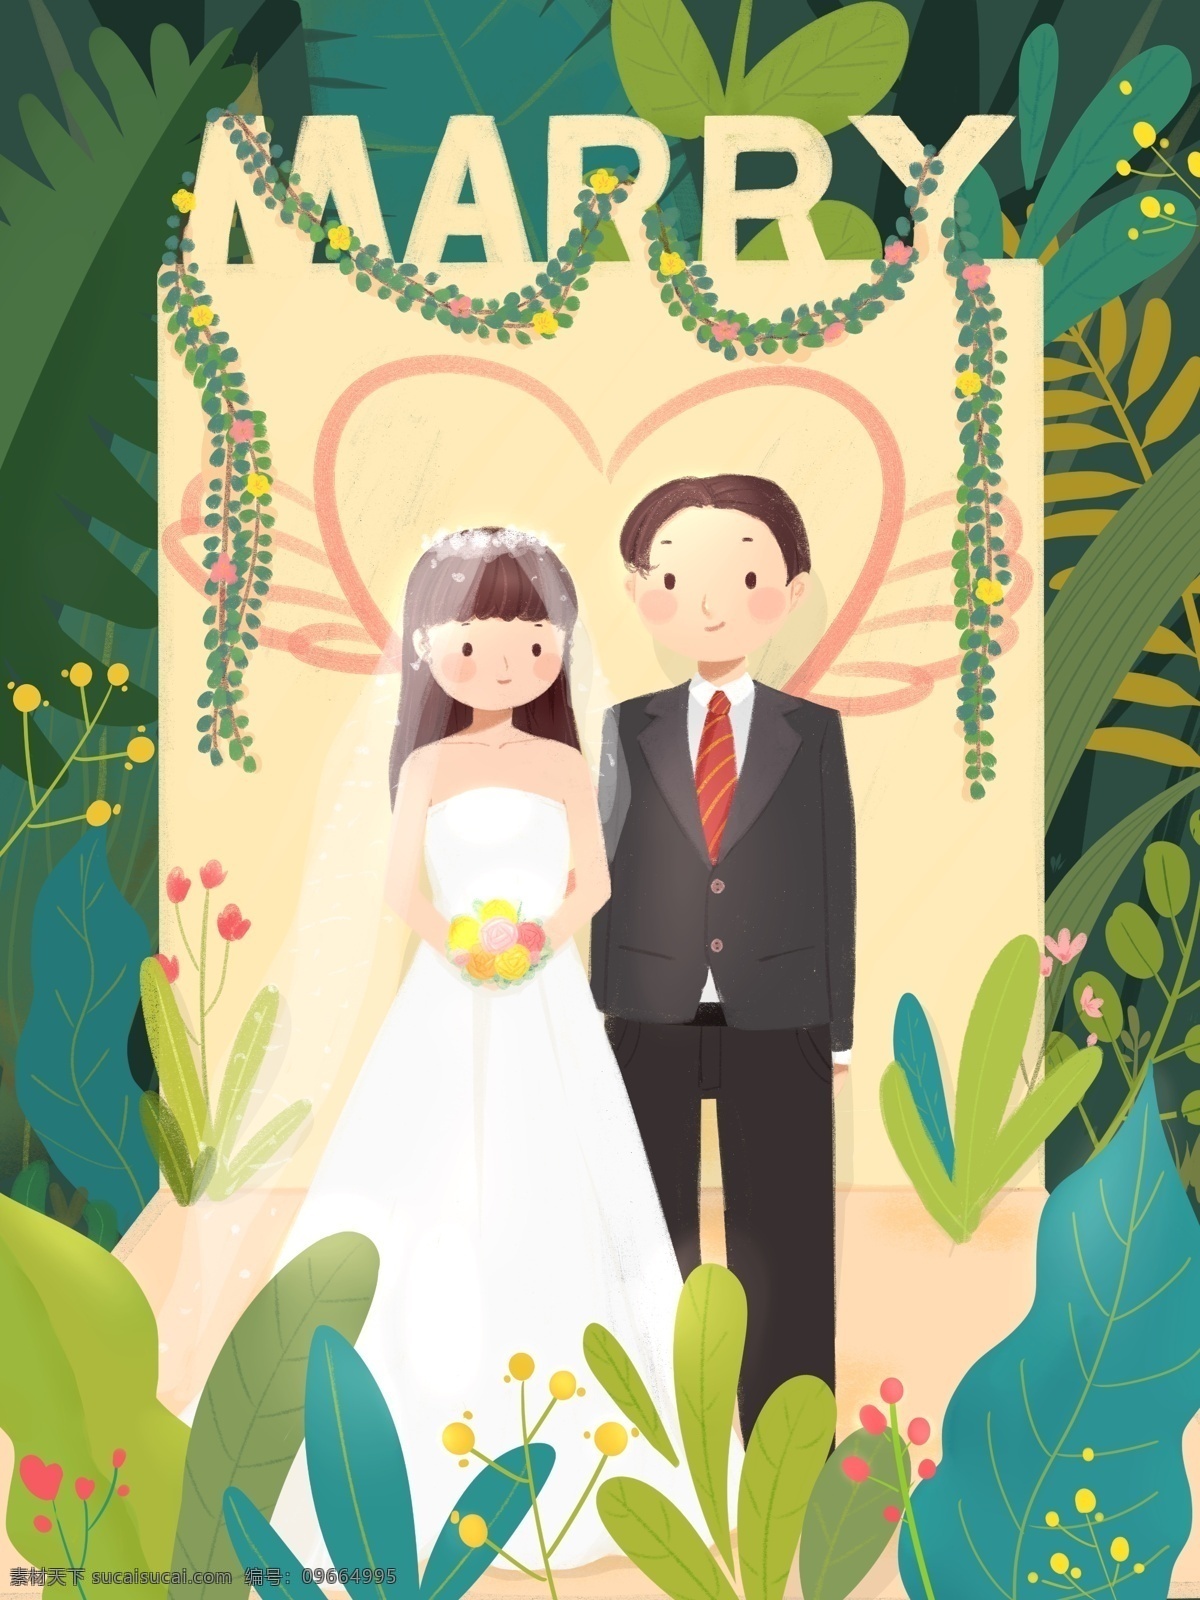 清新 浪漫婚礼 爱情 森林 植物 新郎 新娘 卡通 插画 婚纱 婚庆 结婚 绿植 西装 场景 婚礼季